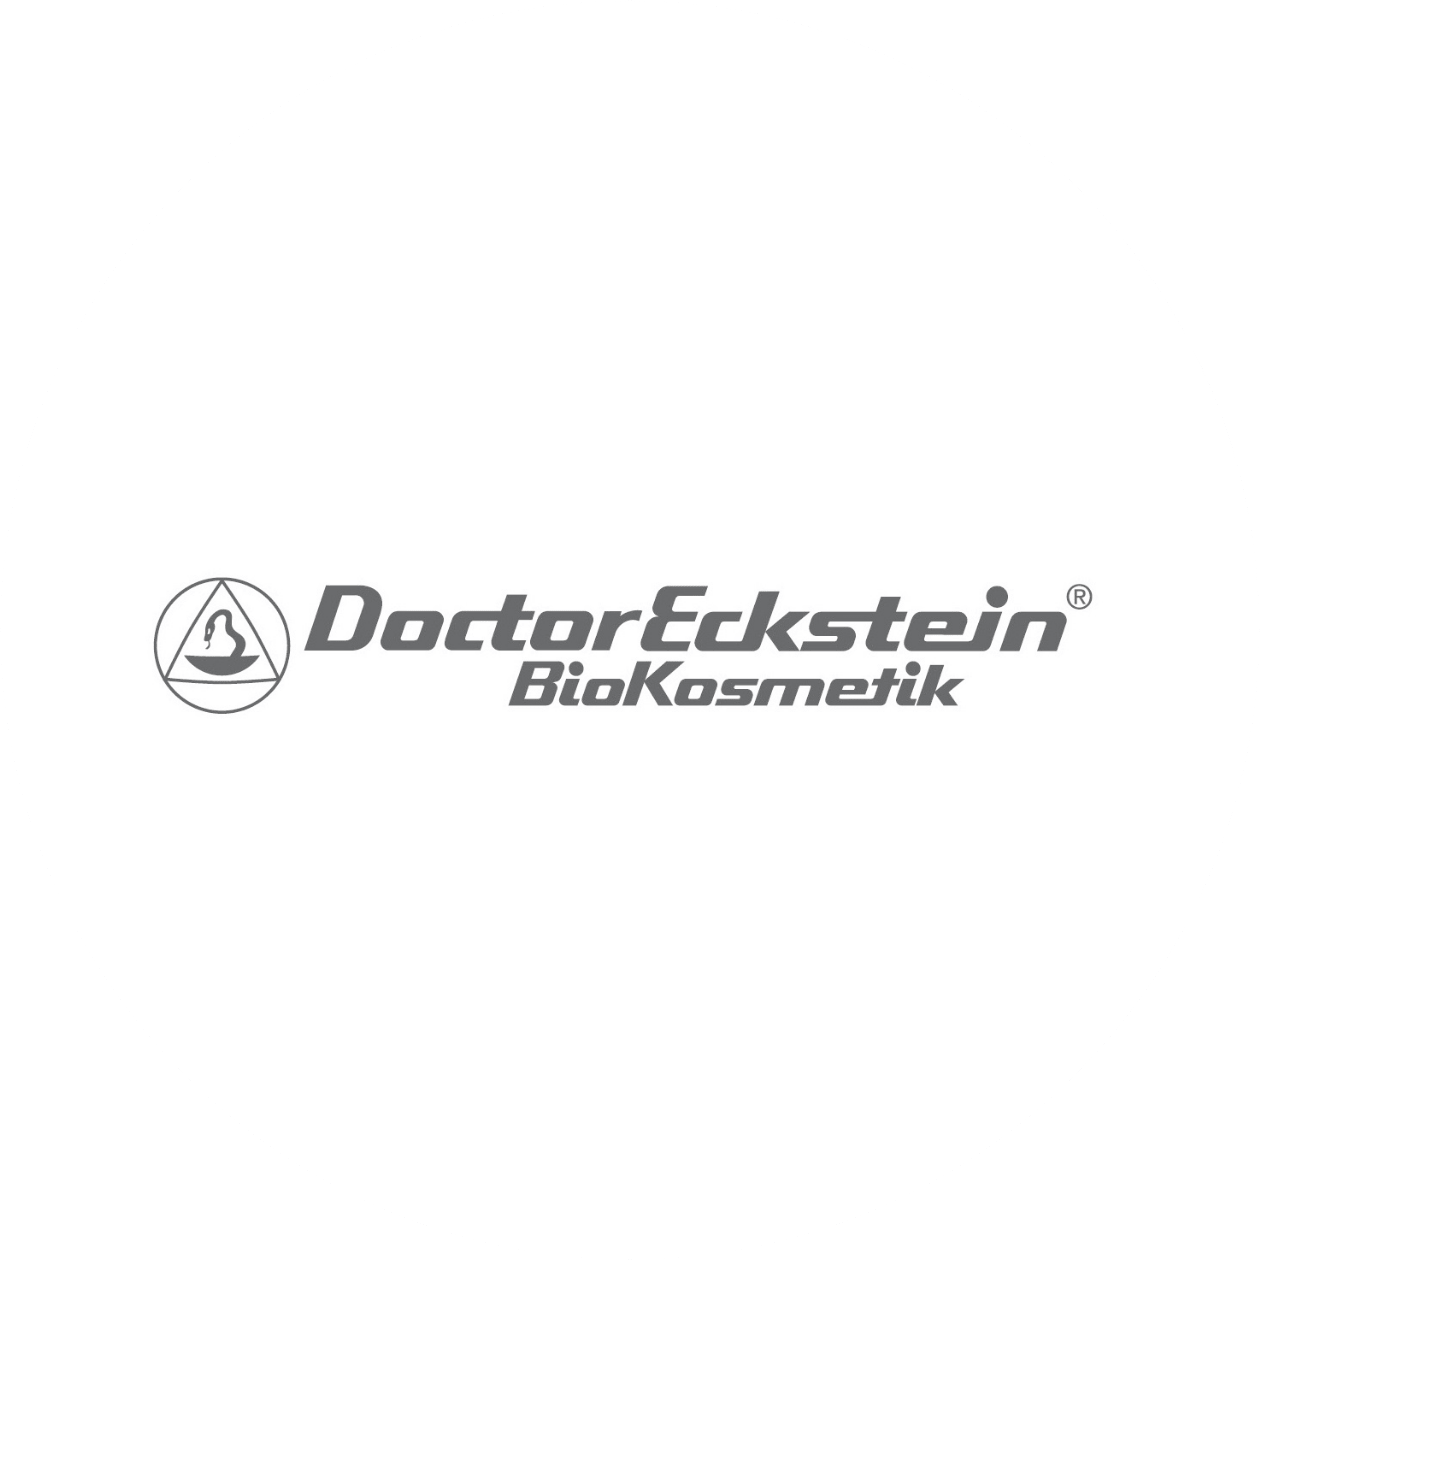 Doctoreckstein-min